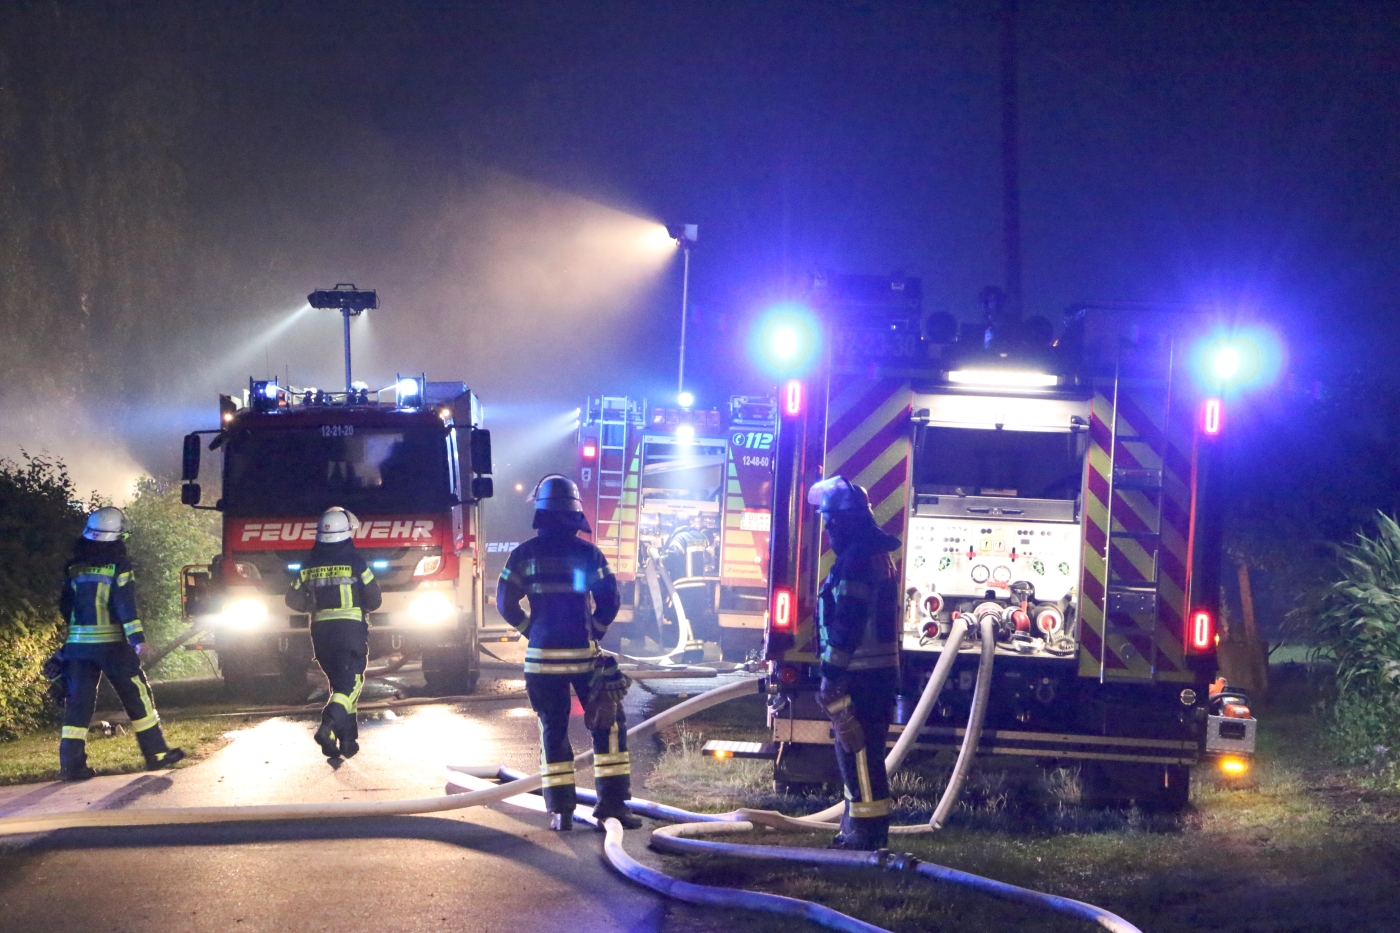 Scheune brennt in Rieste lichterloh, Feuerwehr verhindert Übergreifen auf Wohnhaus